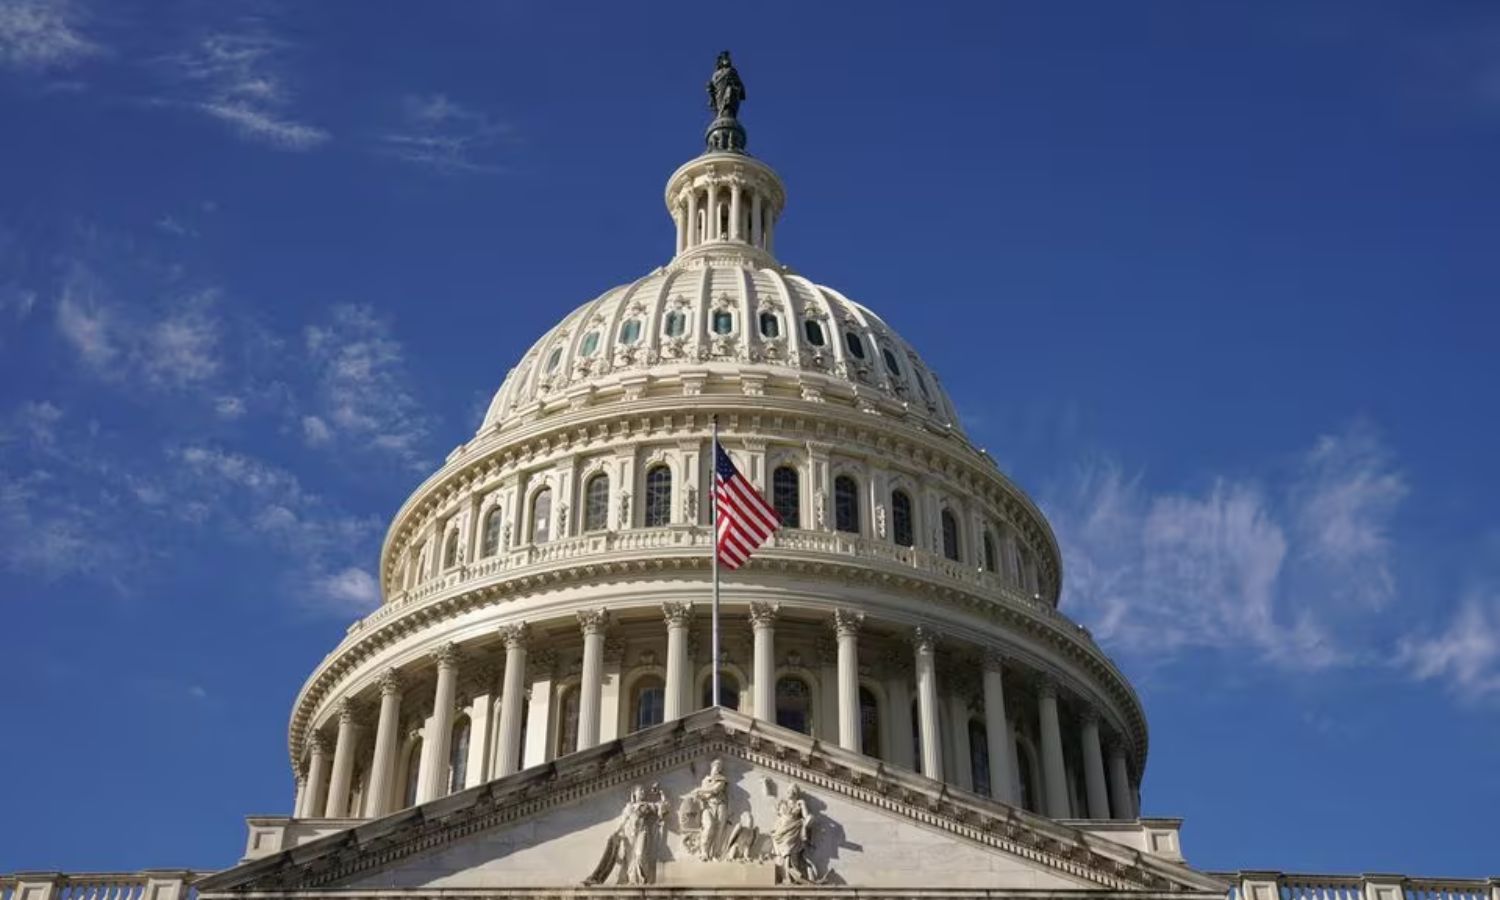 يشكل مبنى "الكابيتول" المقر الرسمي لـ"الكونجرس" الأمريكي، الذي يمثل السلطة التشريعية في الولايات المتحدة بمجلسي النواب والشيوخ الذين يتكون منهما- 2022 (رويترز)